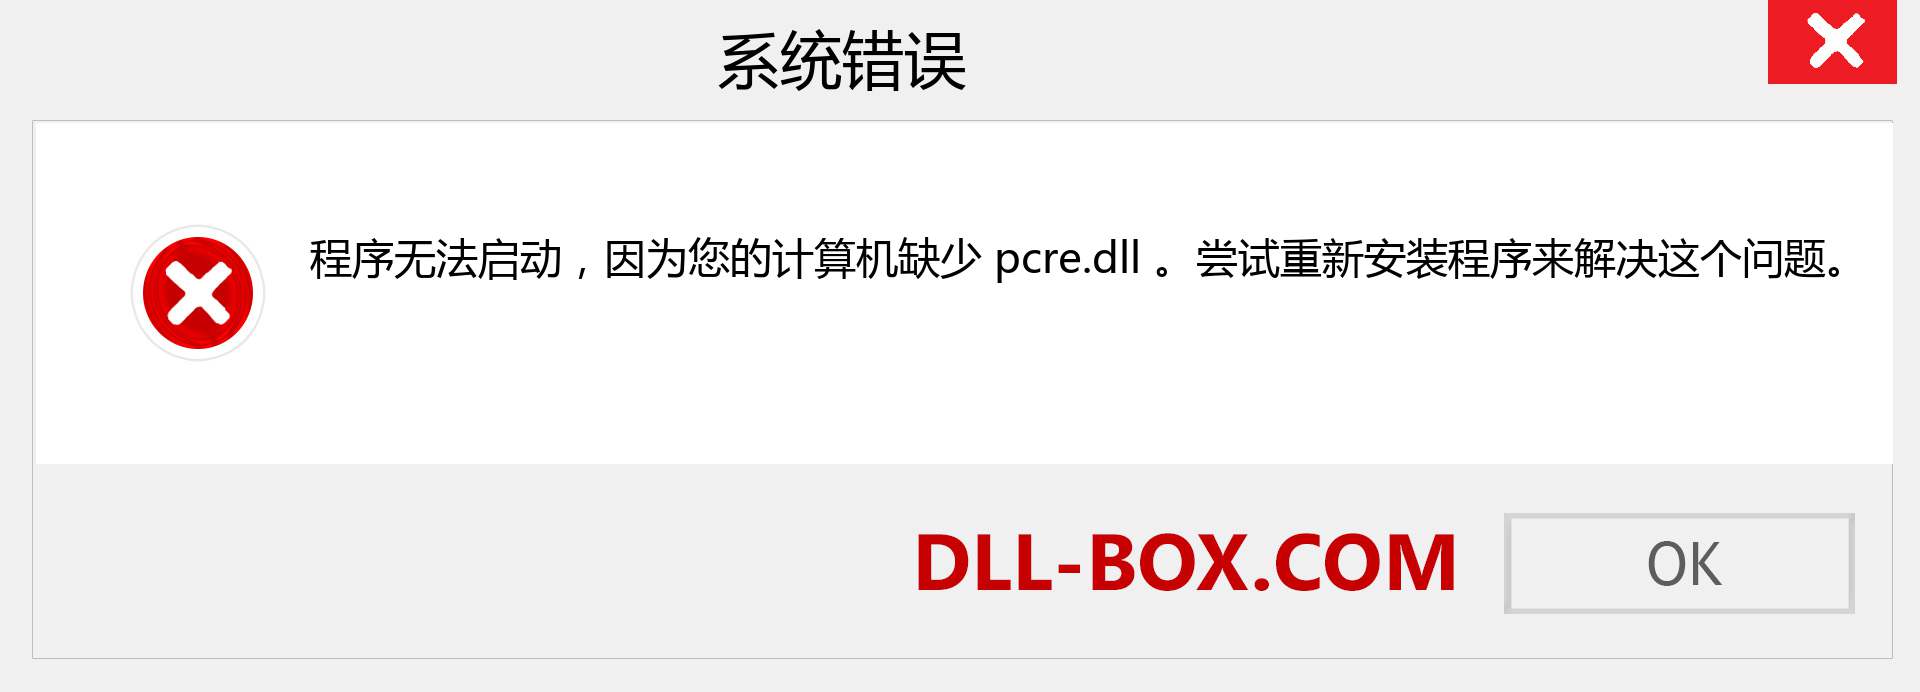 pcre.dll 文件丢失？。 适用于 Windows 7、8、10 的下载 - 修复 Windows、照片、图像上的 pcre dll 丢失错误